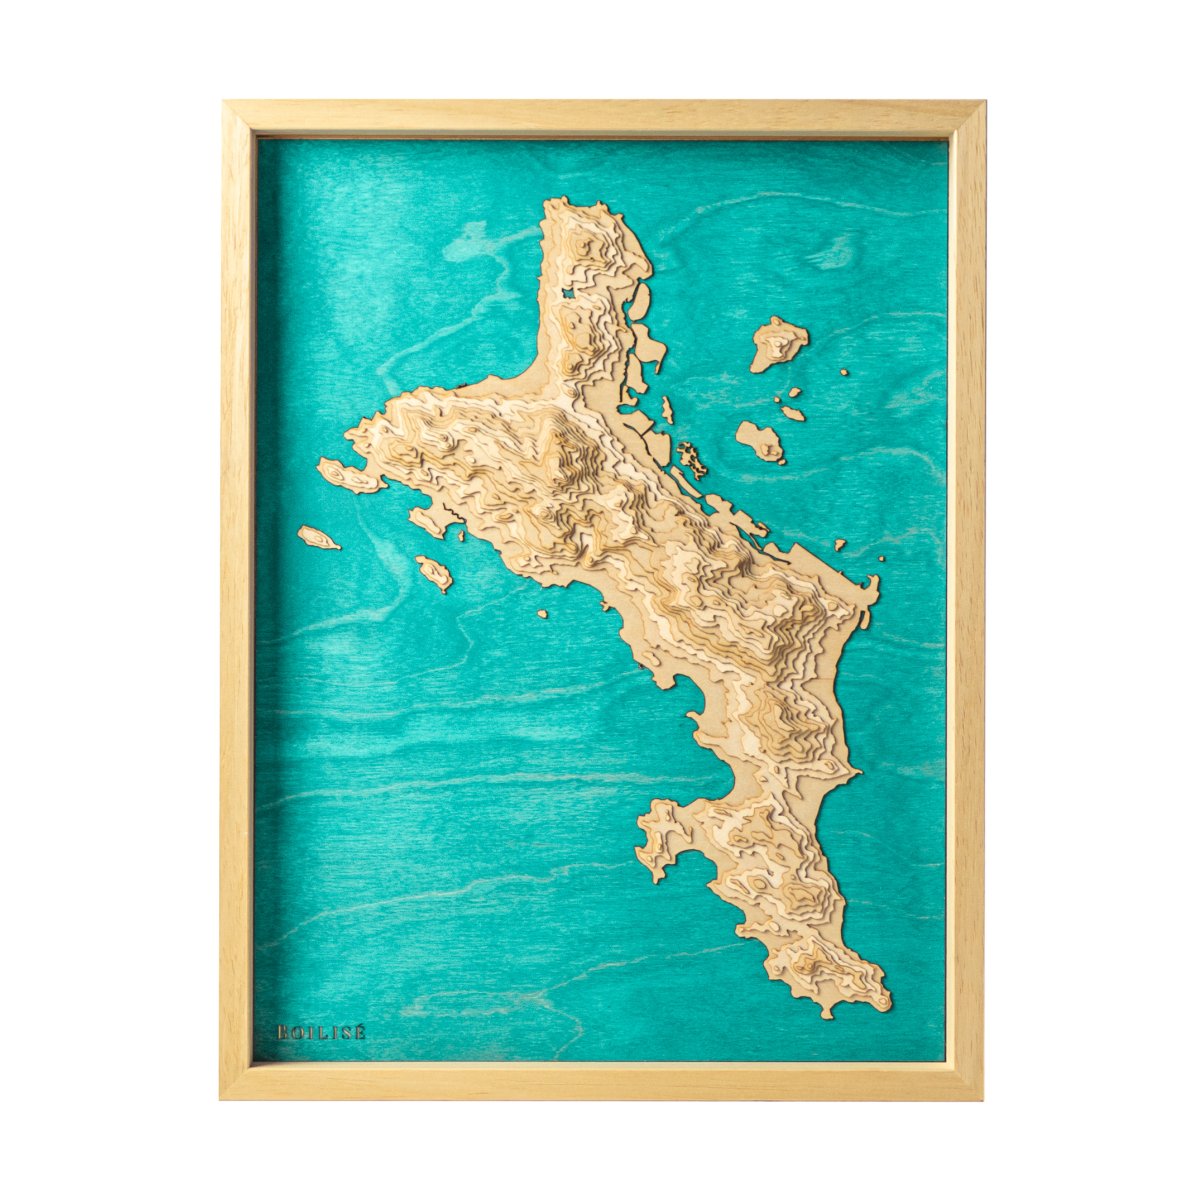 Carte de l'île de Mahé avec un océan indien turquoise